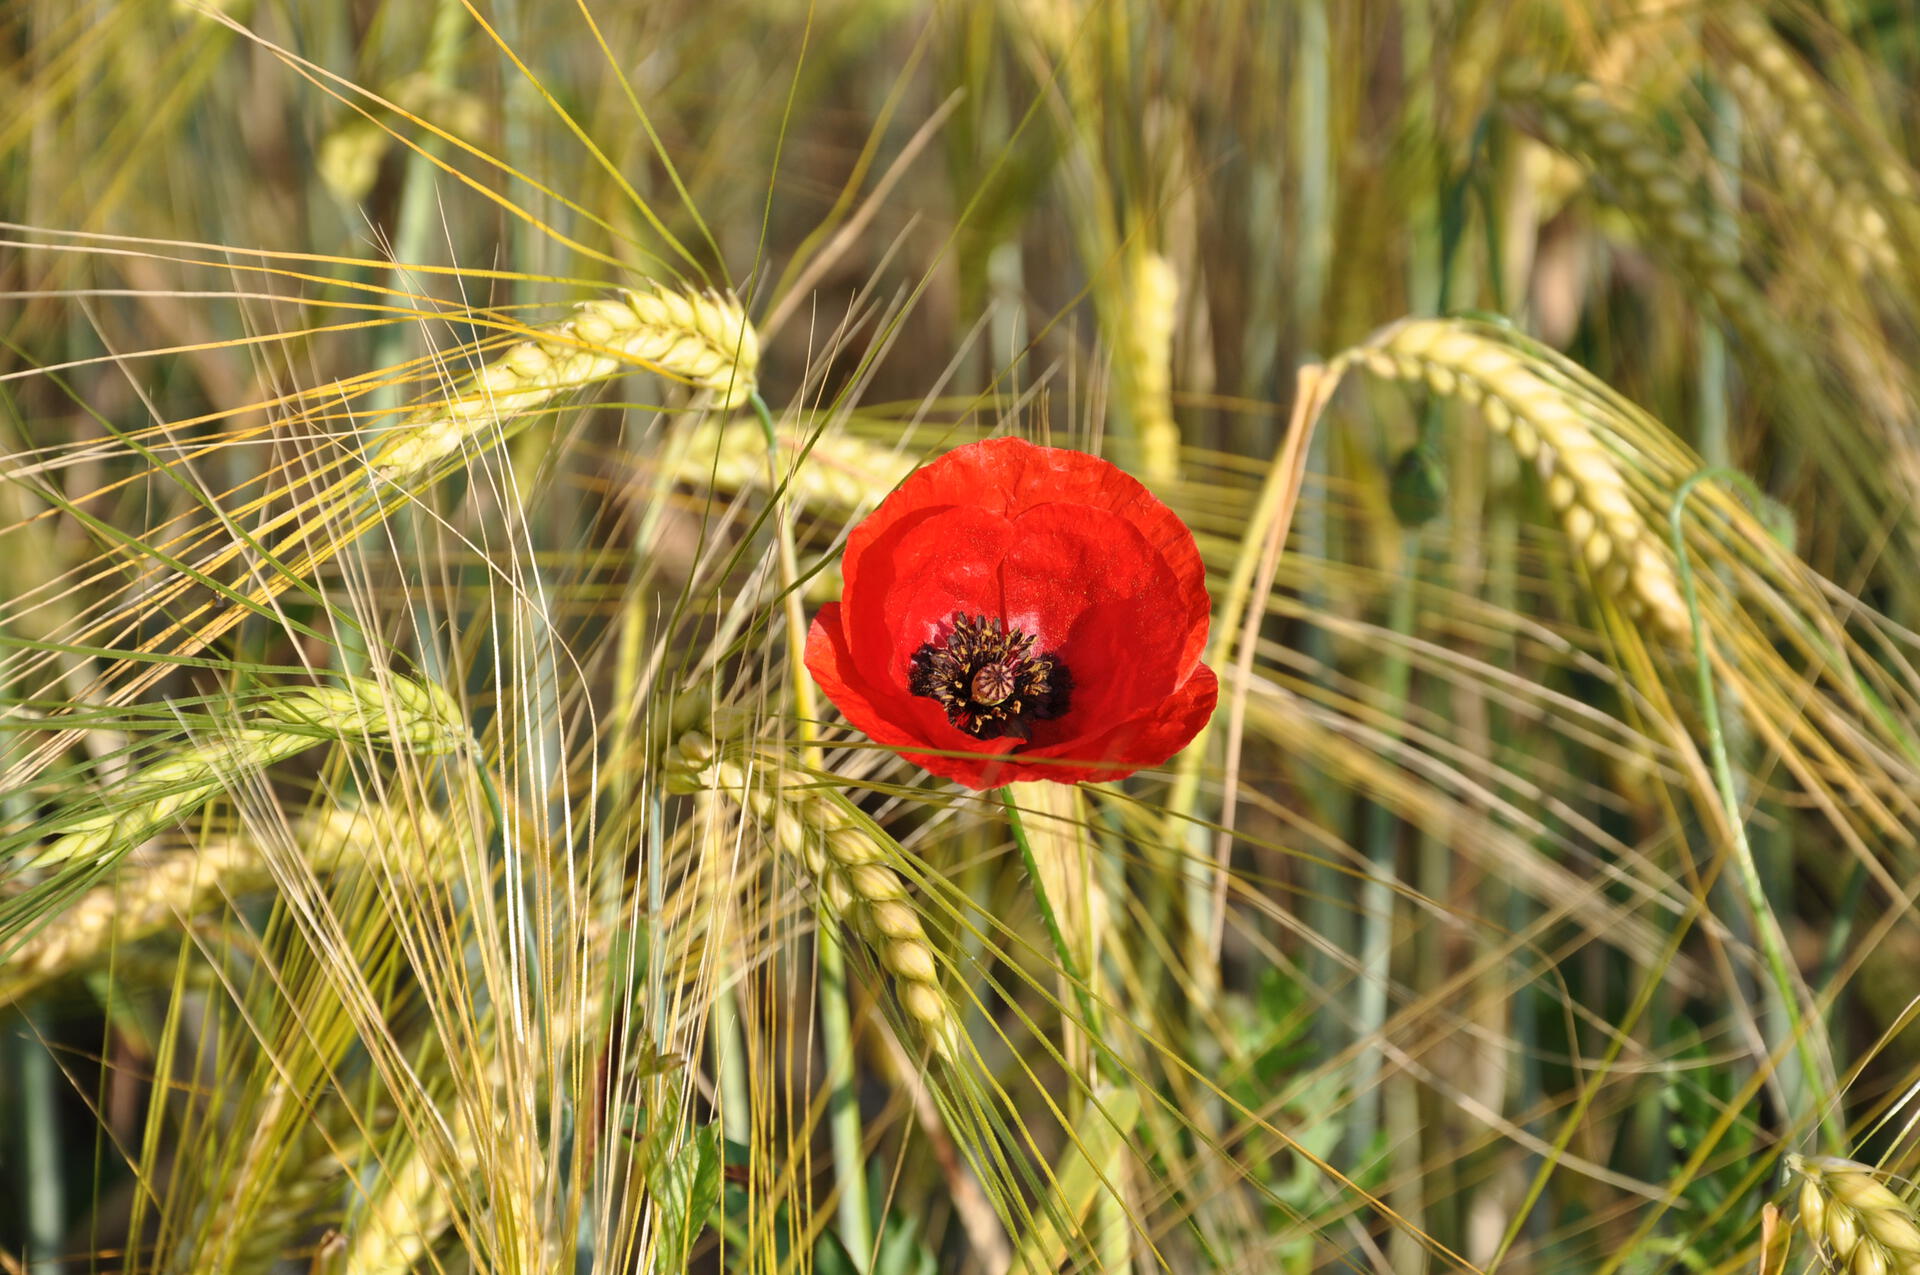 Poppy in the grain field